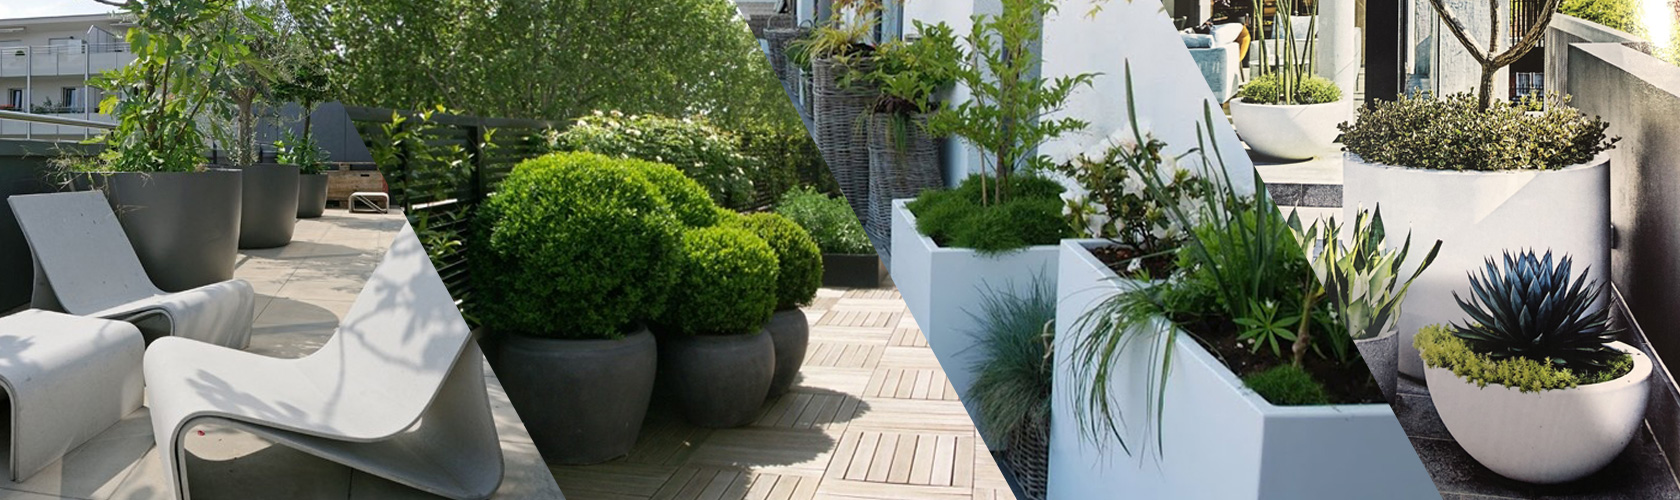 Aménager une terrasse extérieur : notre sélection de décoration by